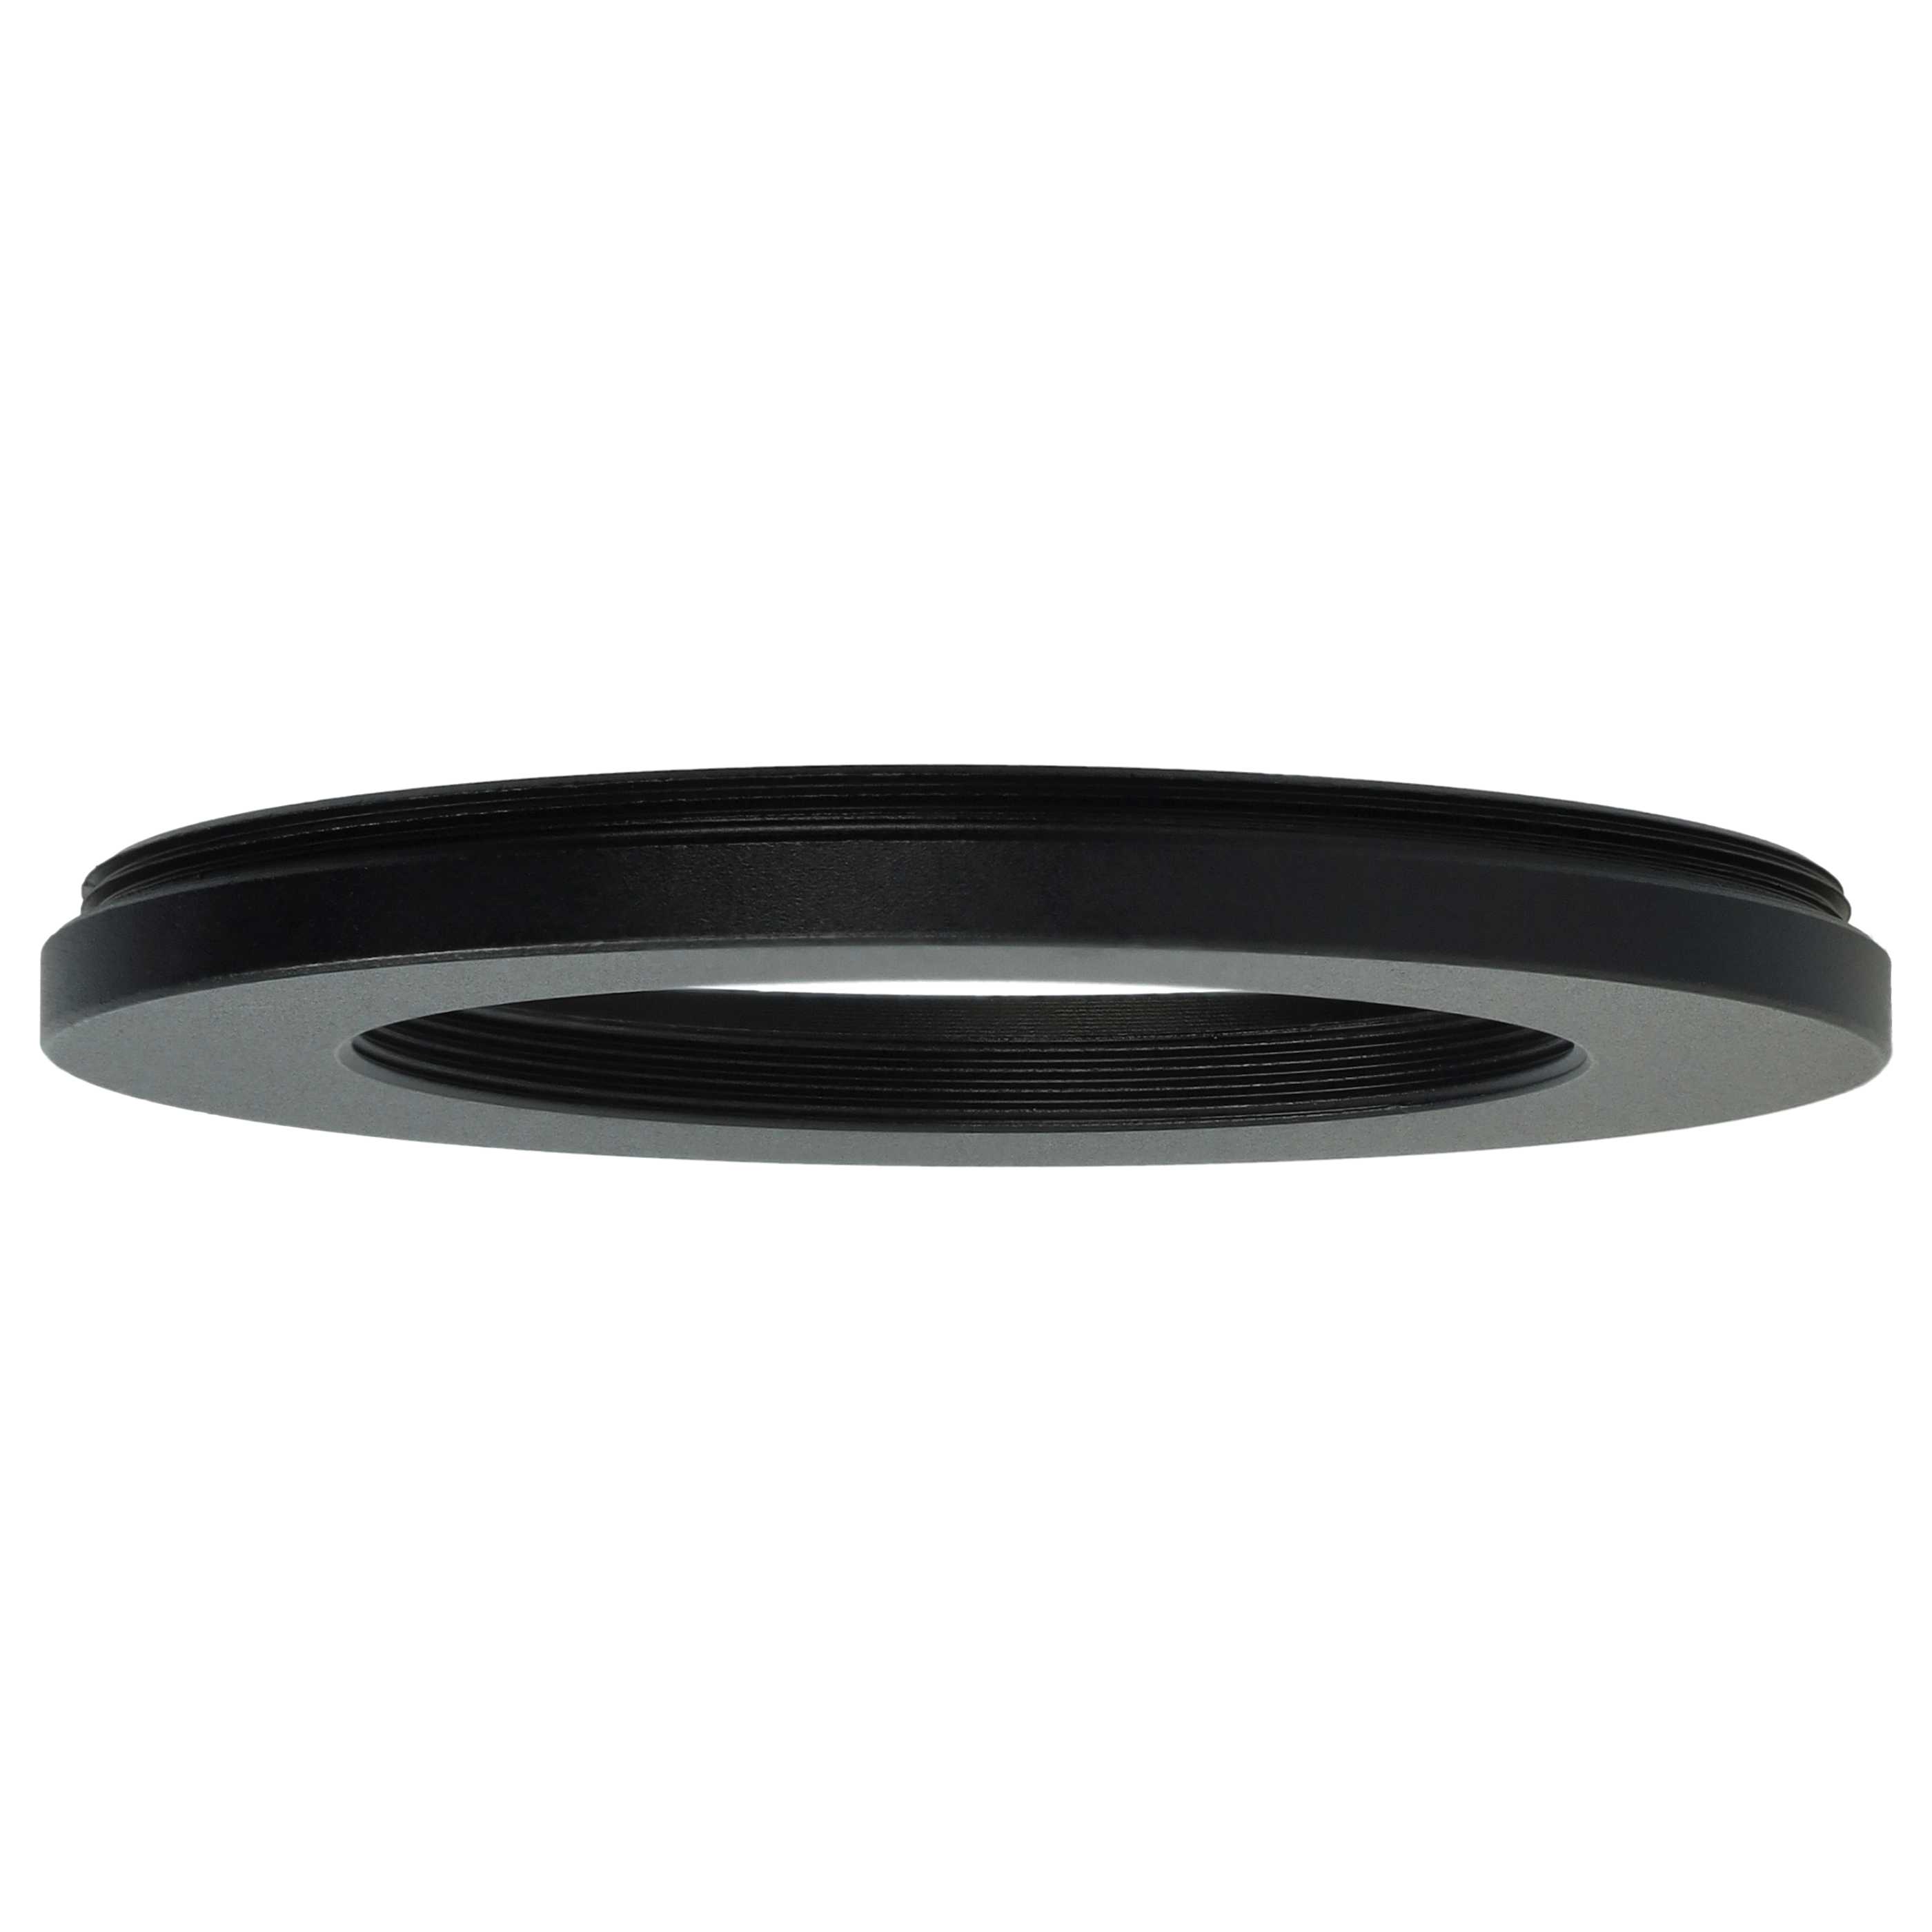 Step-Down-Ring Adapter von 62 mm auf 43 mm passend für Kamera Objektiv - Filteradapter, Metall, schwarz